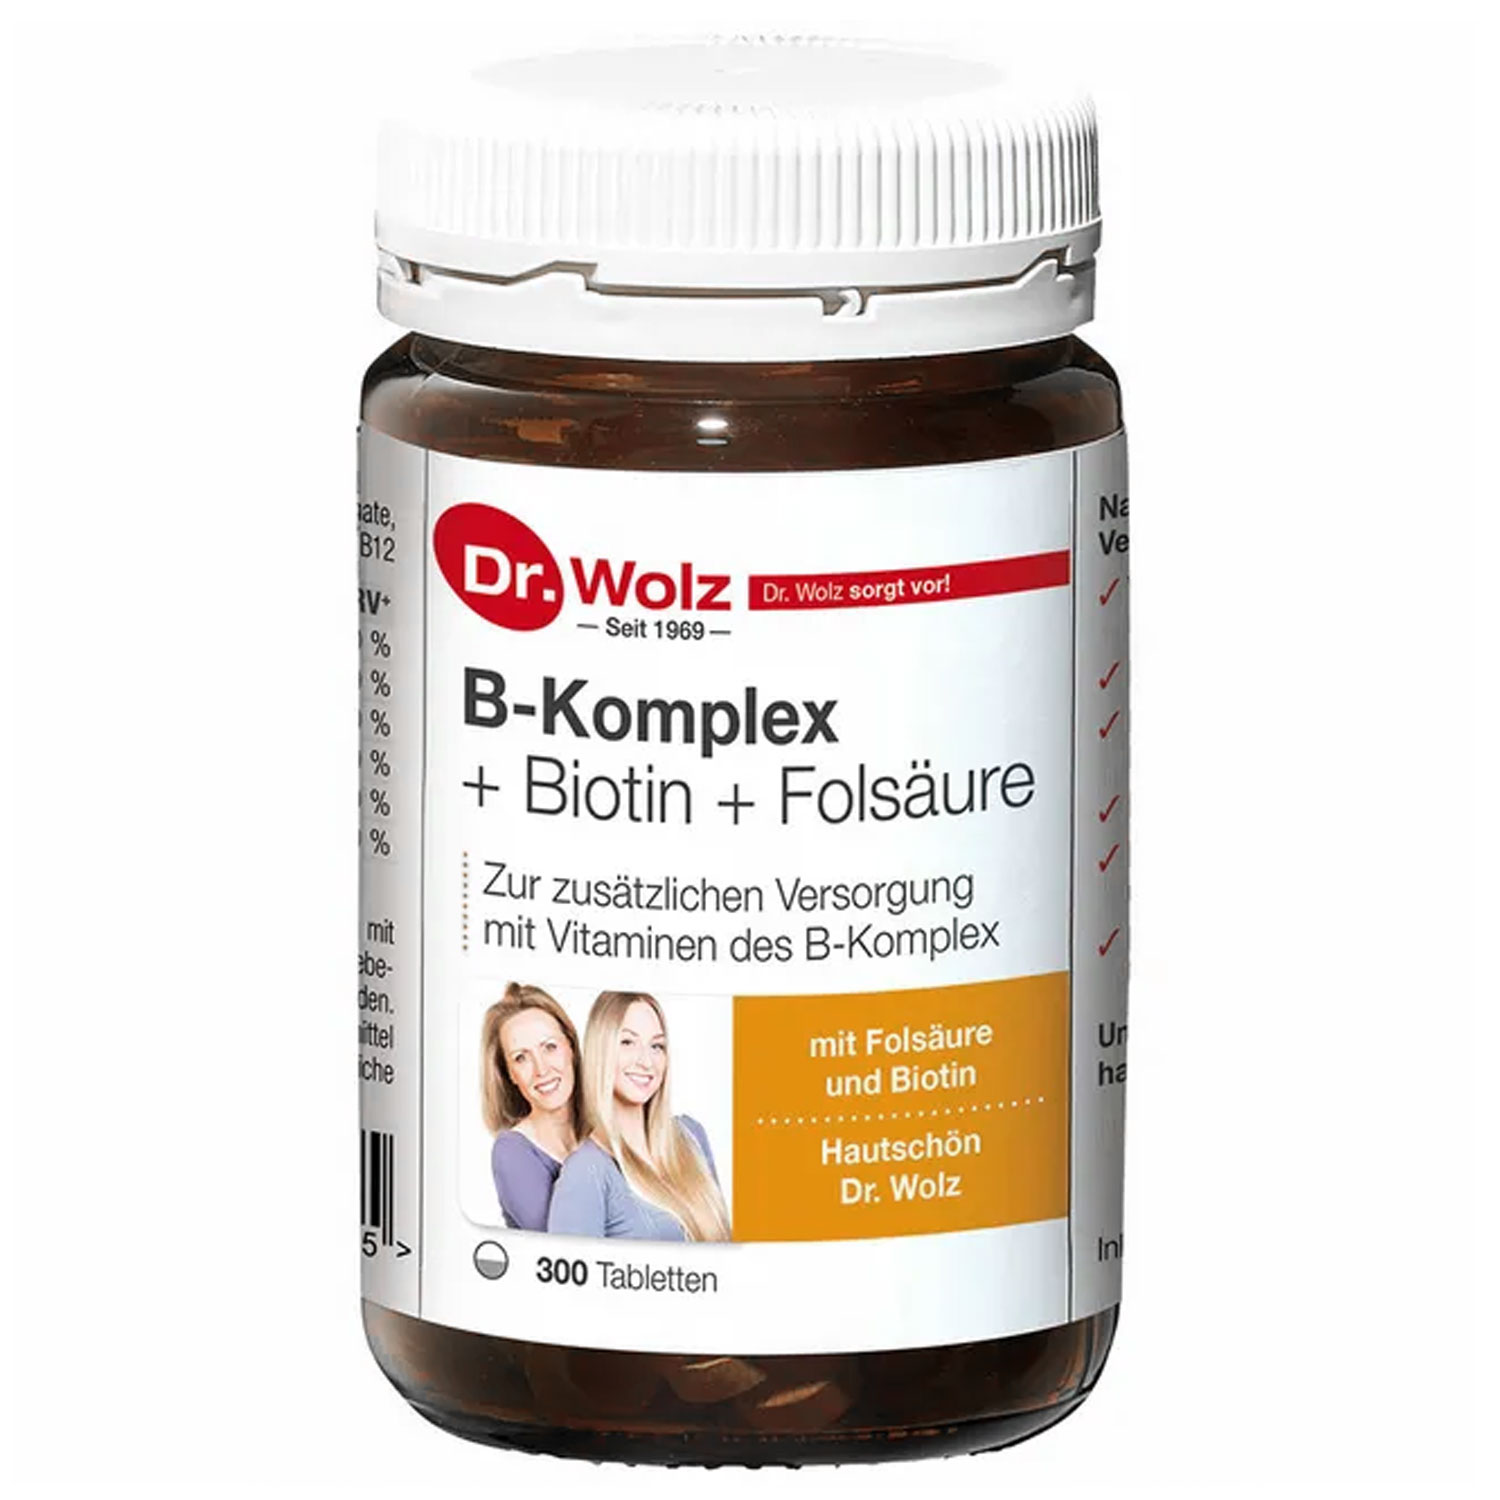 B-Komplex + Biotin + Folsäure Hefetabletten von Dr. Wolz - 300 Stck.